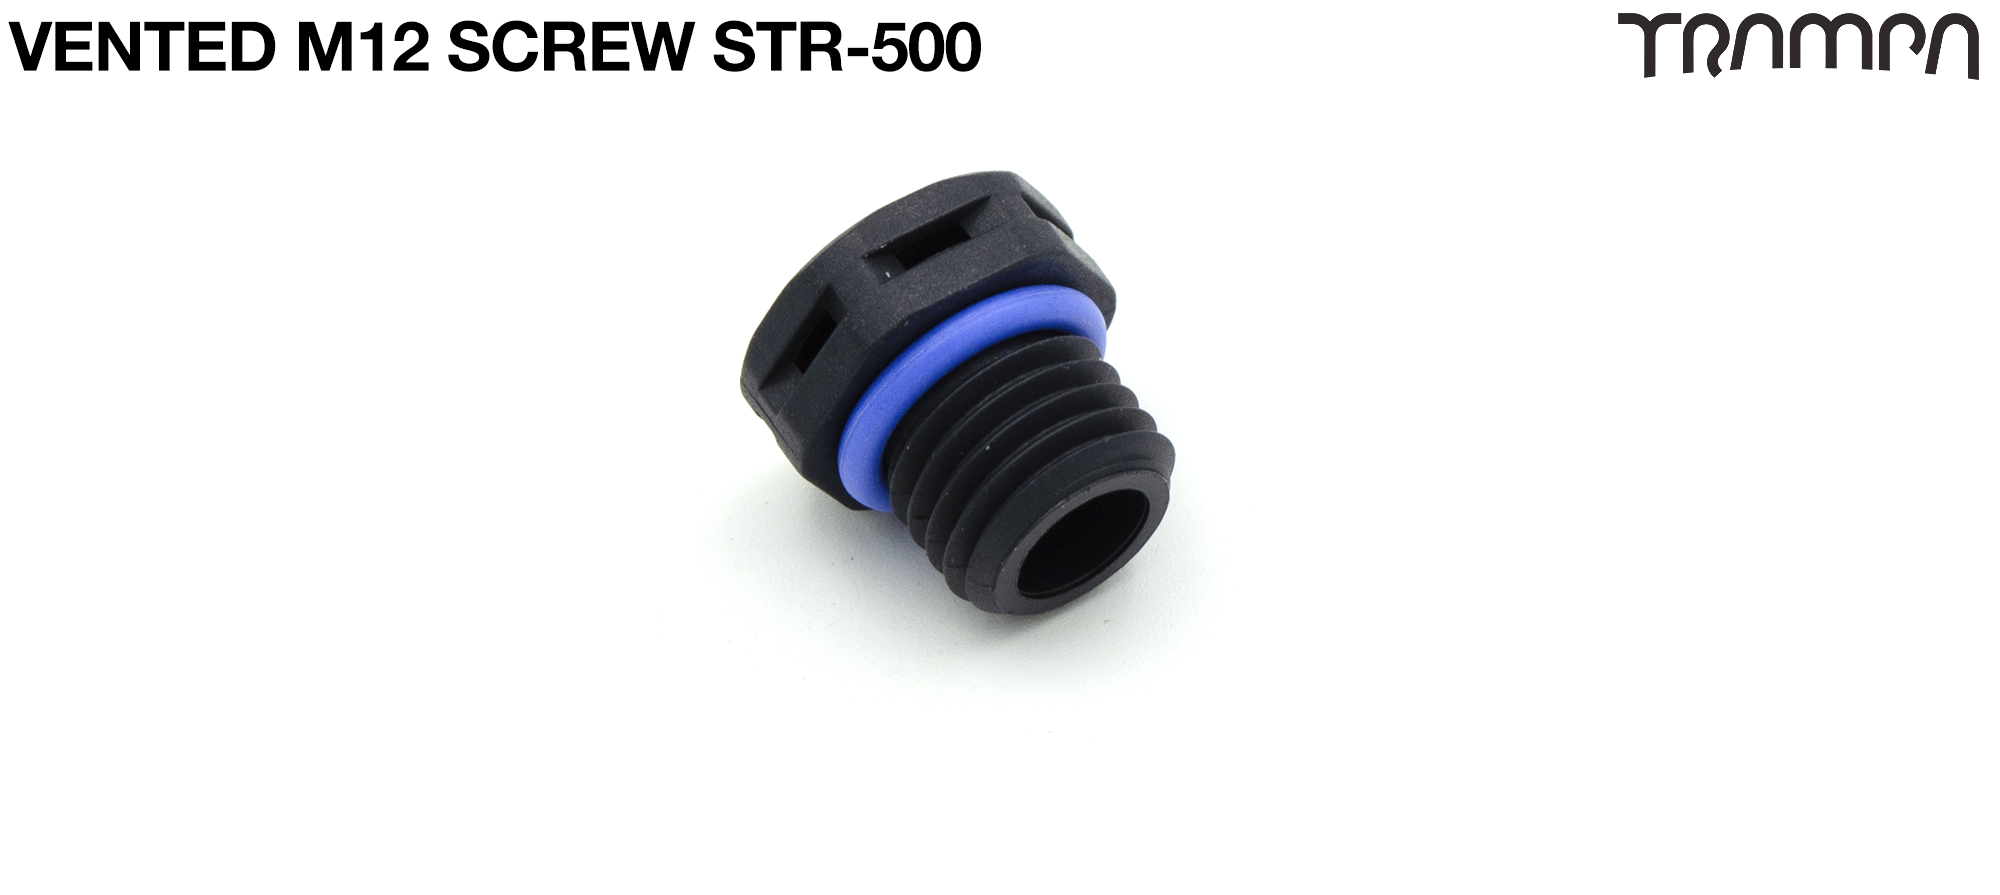 STR-500 Pressure Equal 